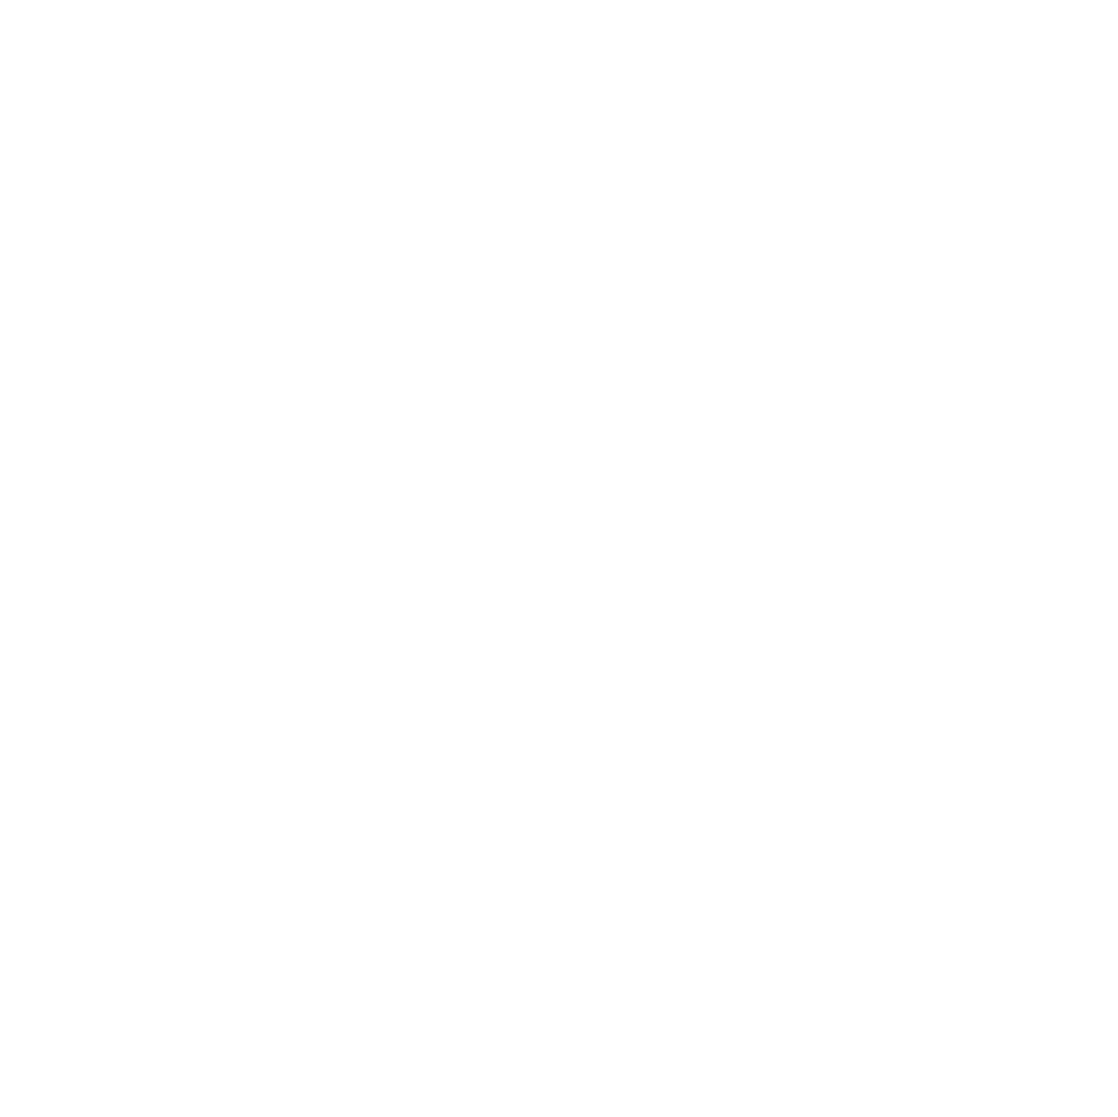 LMG Portraits